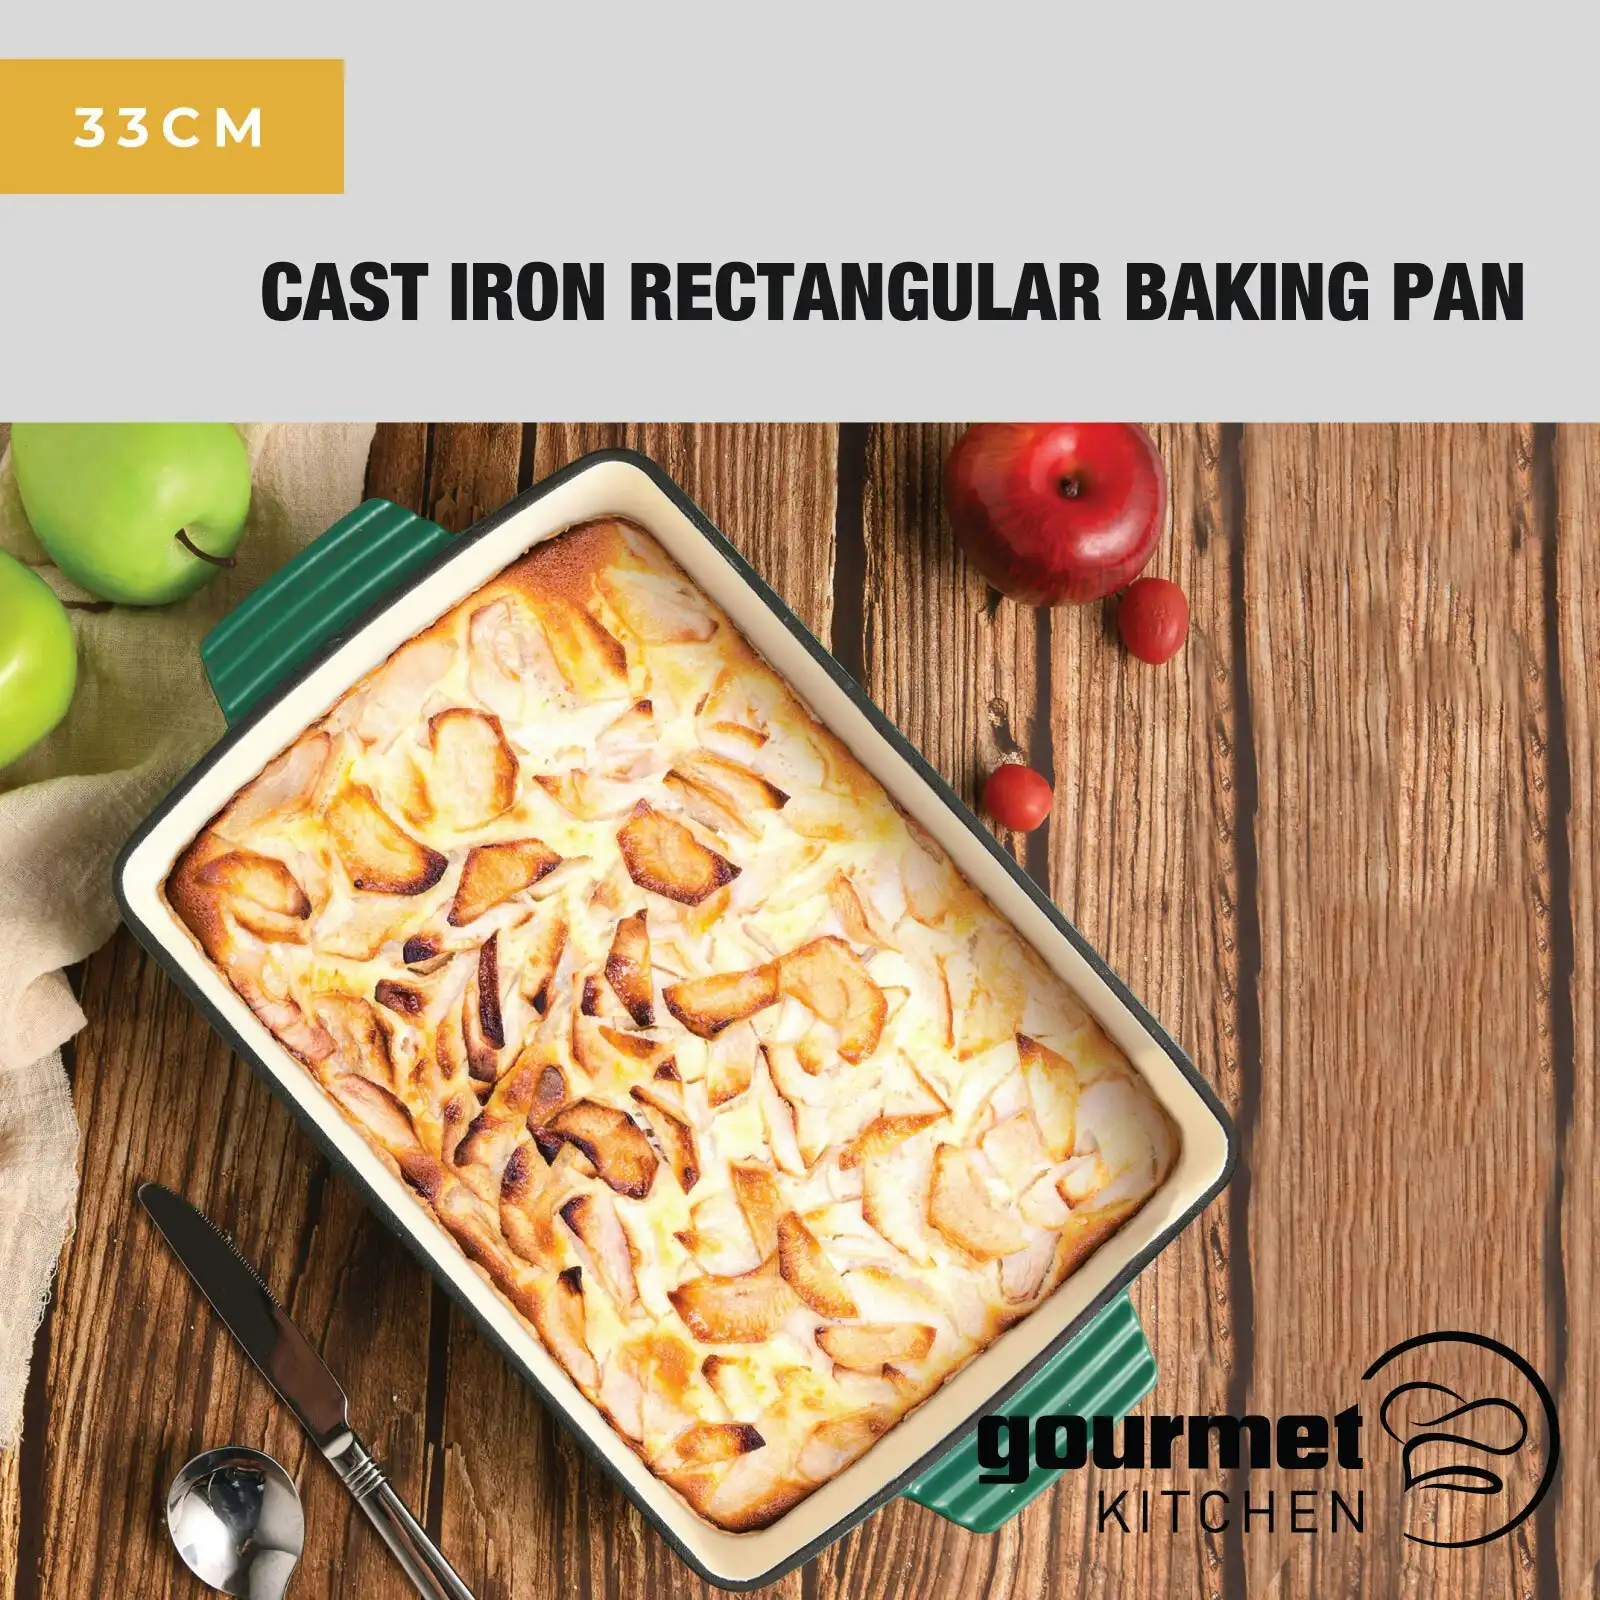 Gourmet Kitchen Cast Iron Rectangular Baking Pan 33cm Eden Green